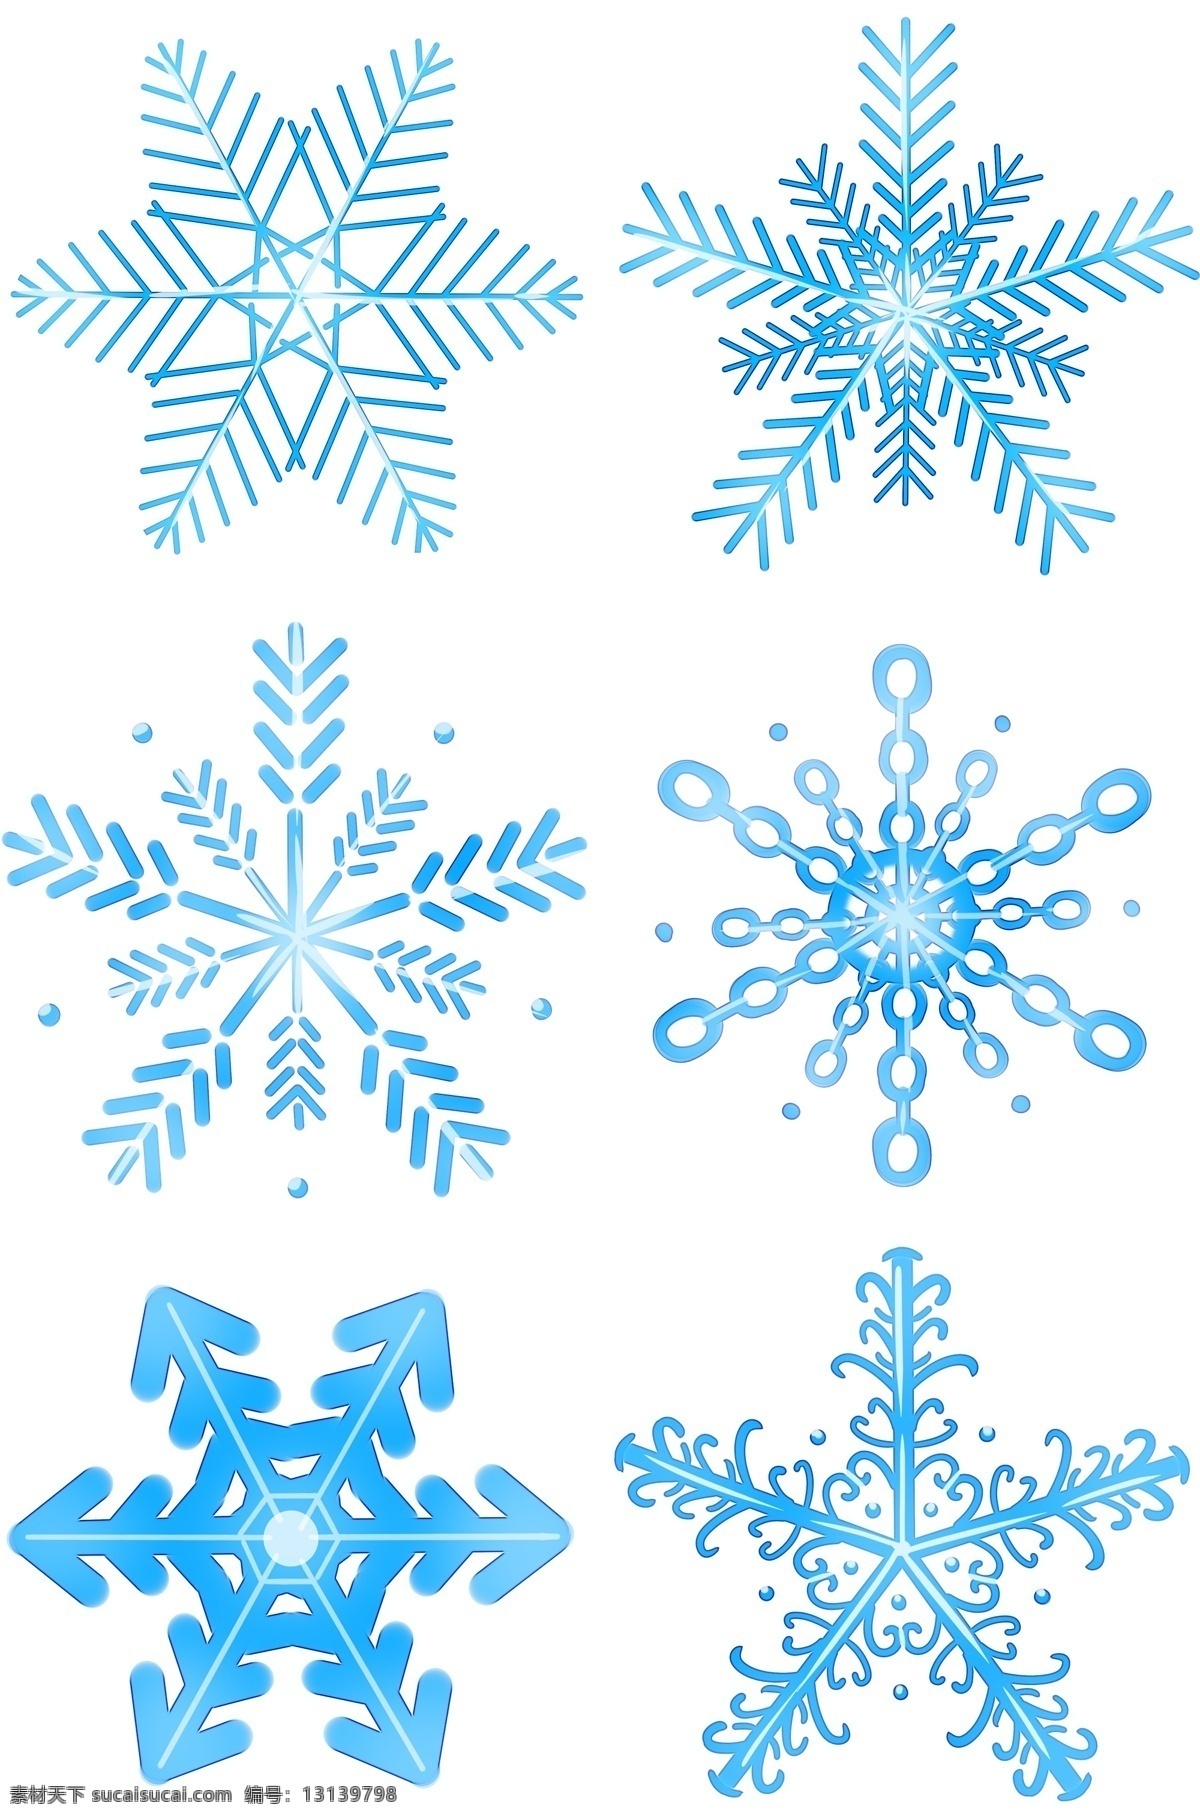 冬日 晶莹 雪花 系列 冬天下雪 雪花的形状 蓝色雪花 晶莹雪花 亮晶晶的雪花 原创雪花图形 晶莹的雪花